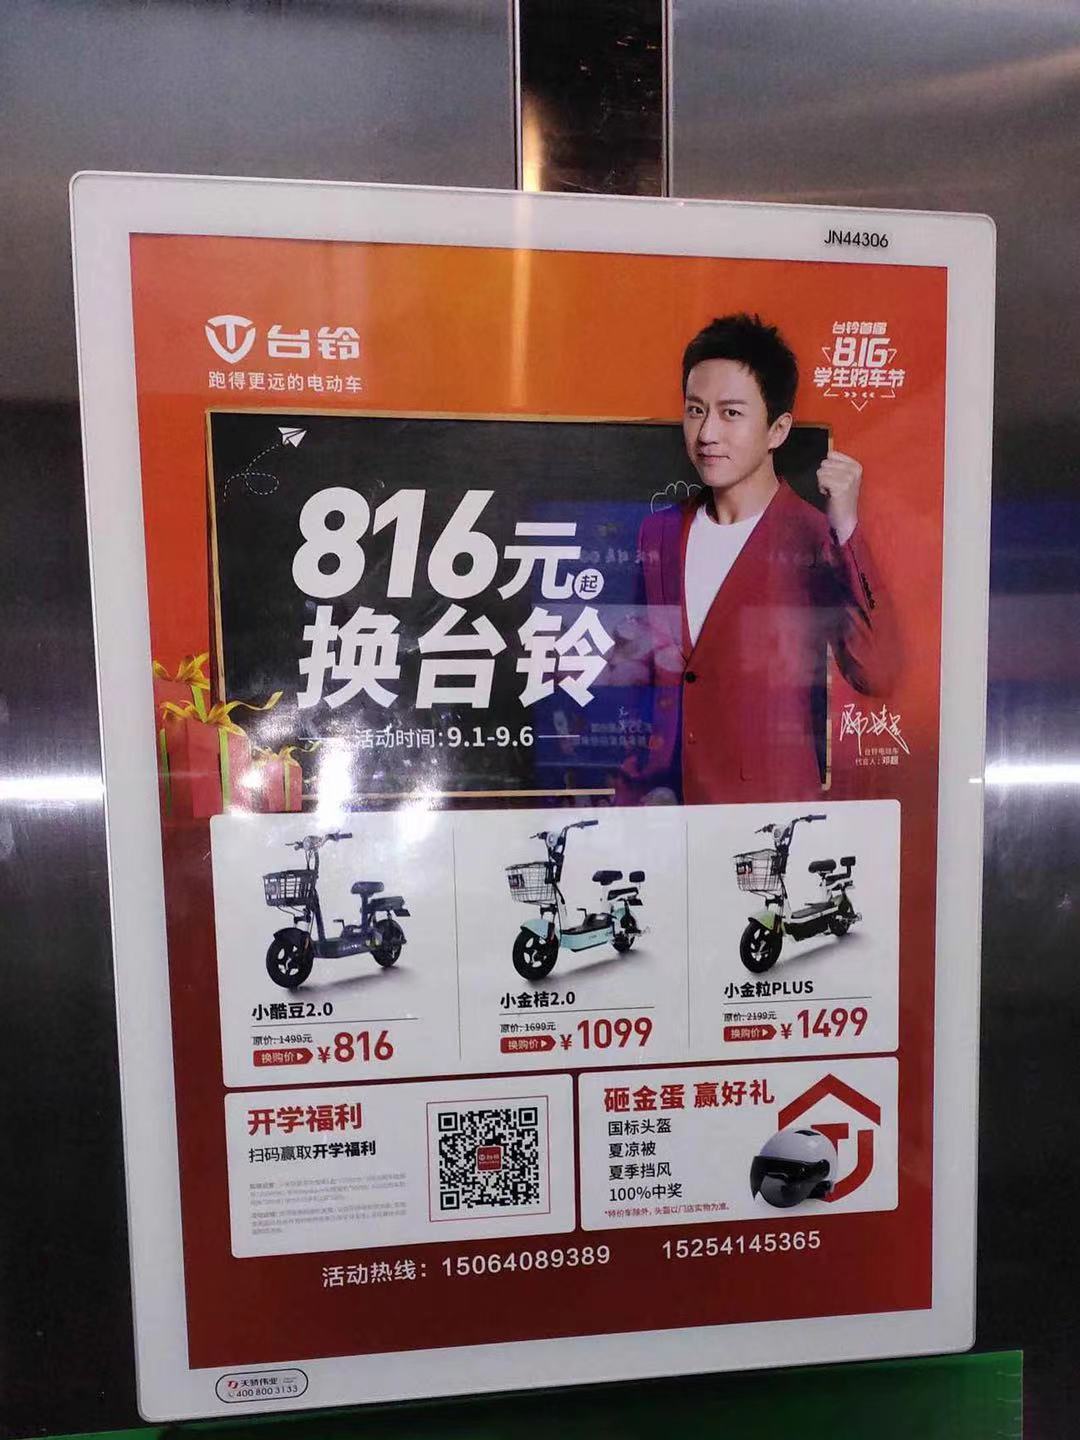 电梯广告报价 电梯广告哪里好 电梯广告附近哪里有 电梯广告怎么做 汽车电梯广告  小区电动车电梯广告投放